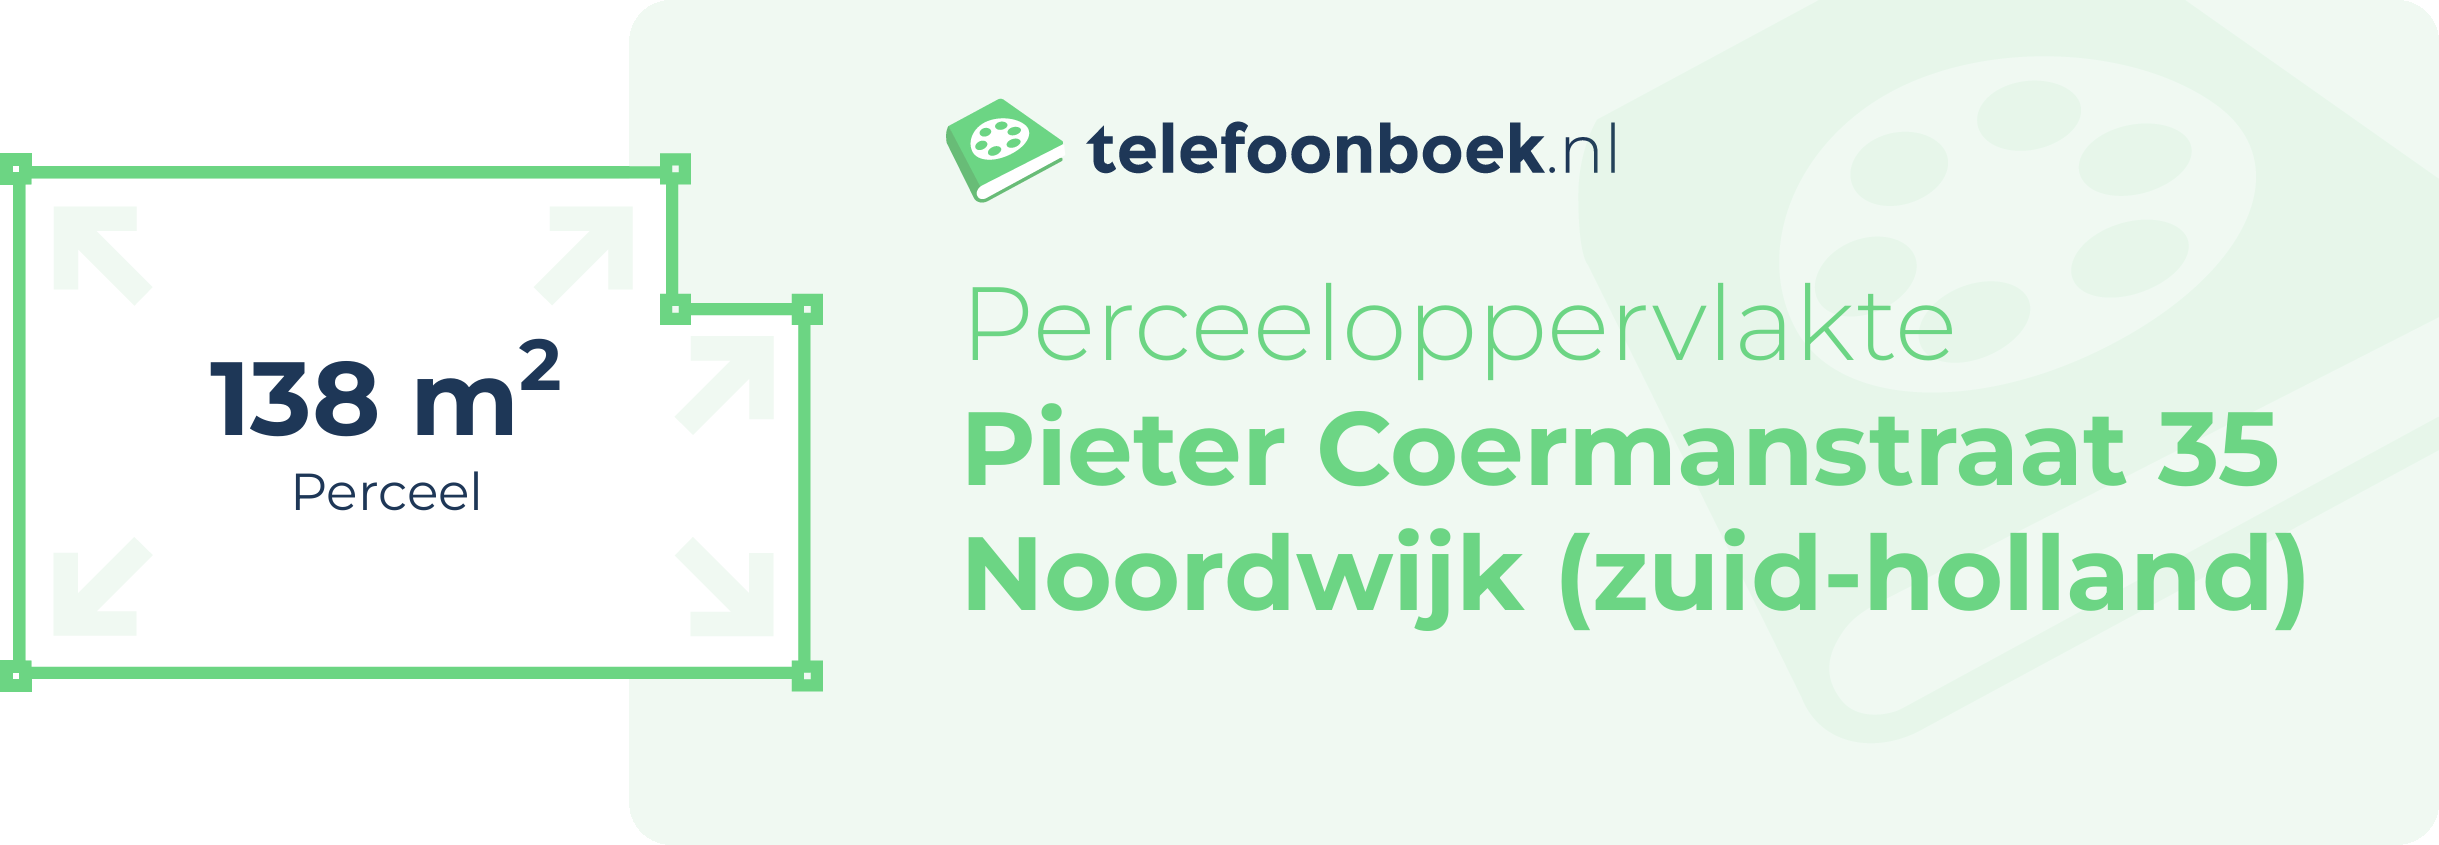 Perceeloppervlakte Pieter Coermanstraat 35 Noordwijk (Zuid-Holland)